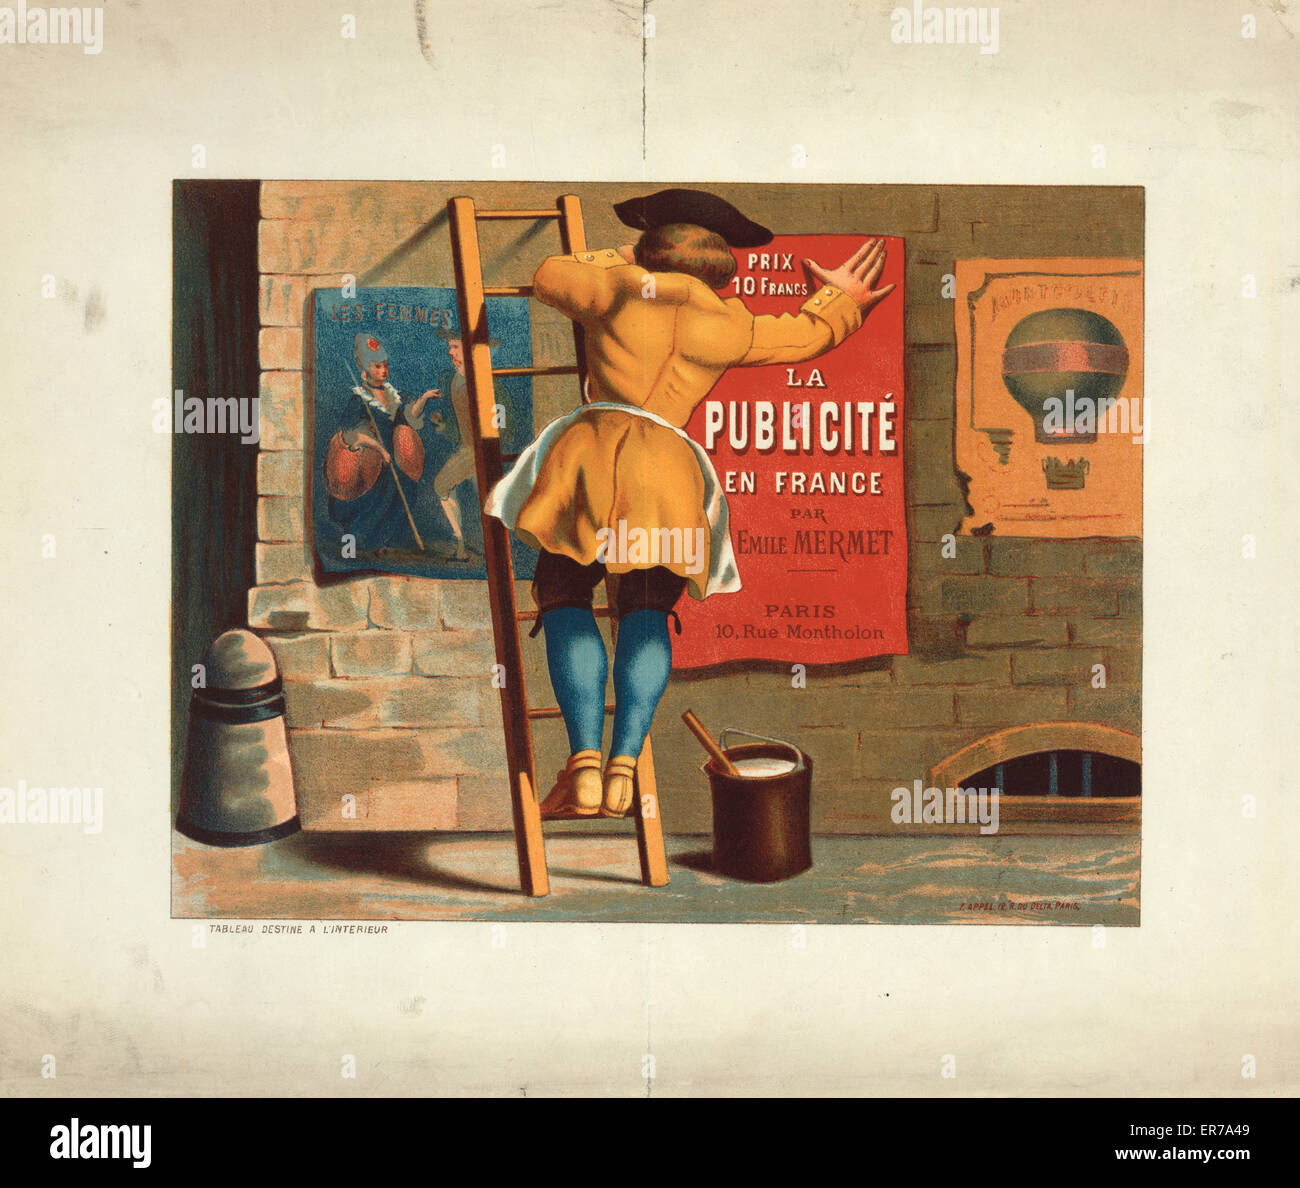 Man posting an advertisement for La publicite en France par Stock Photo